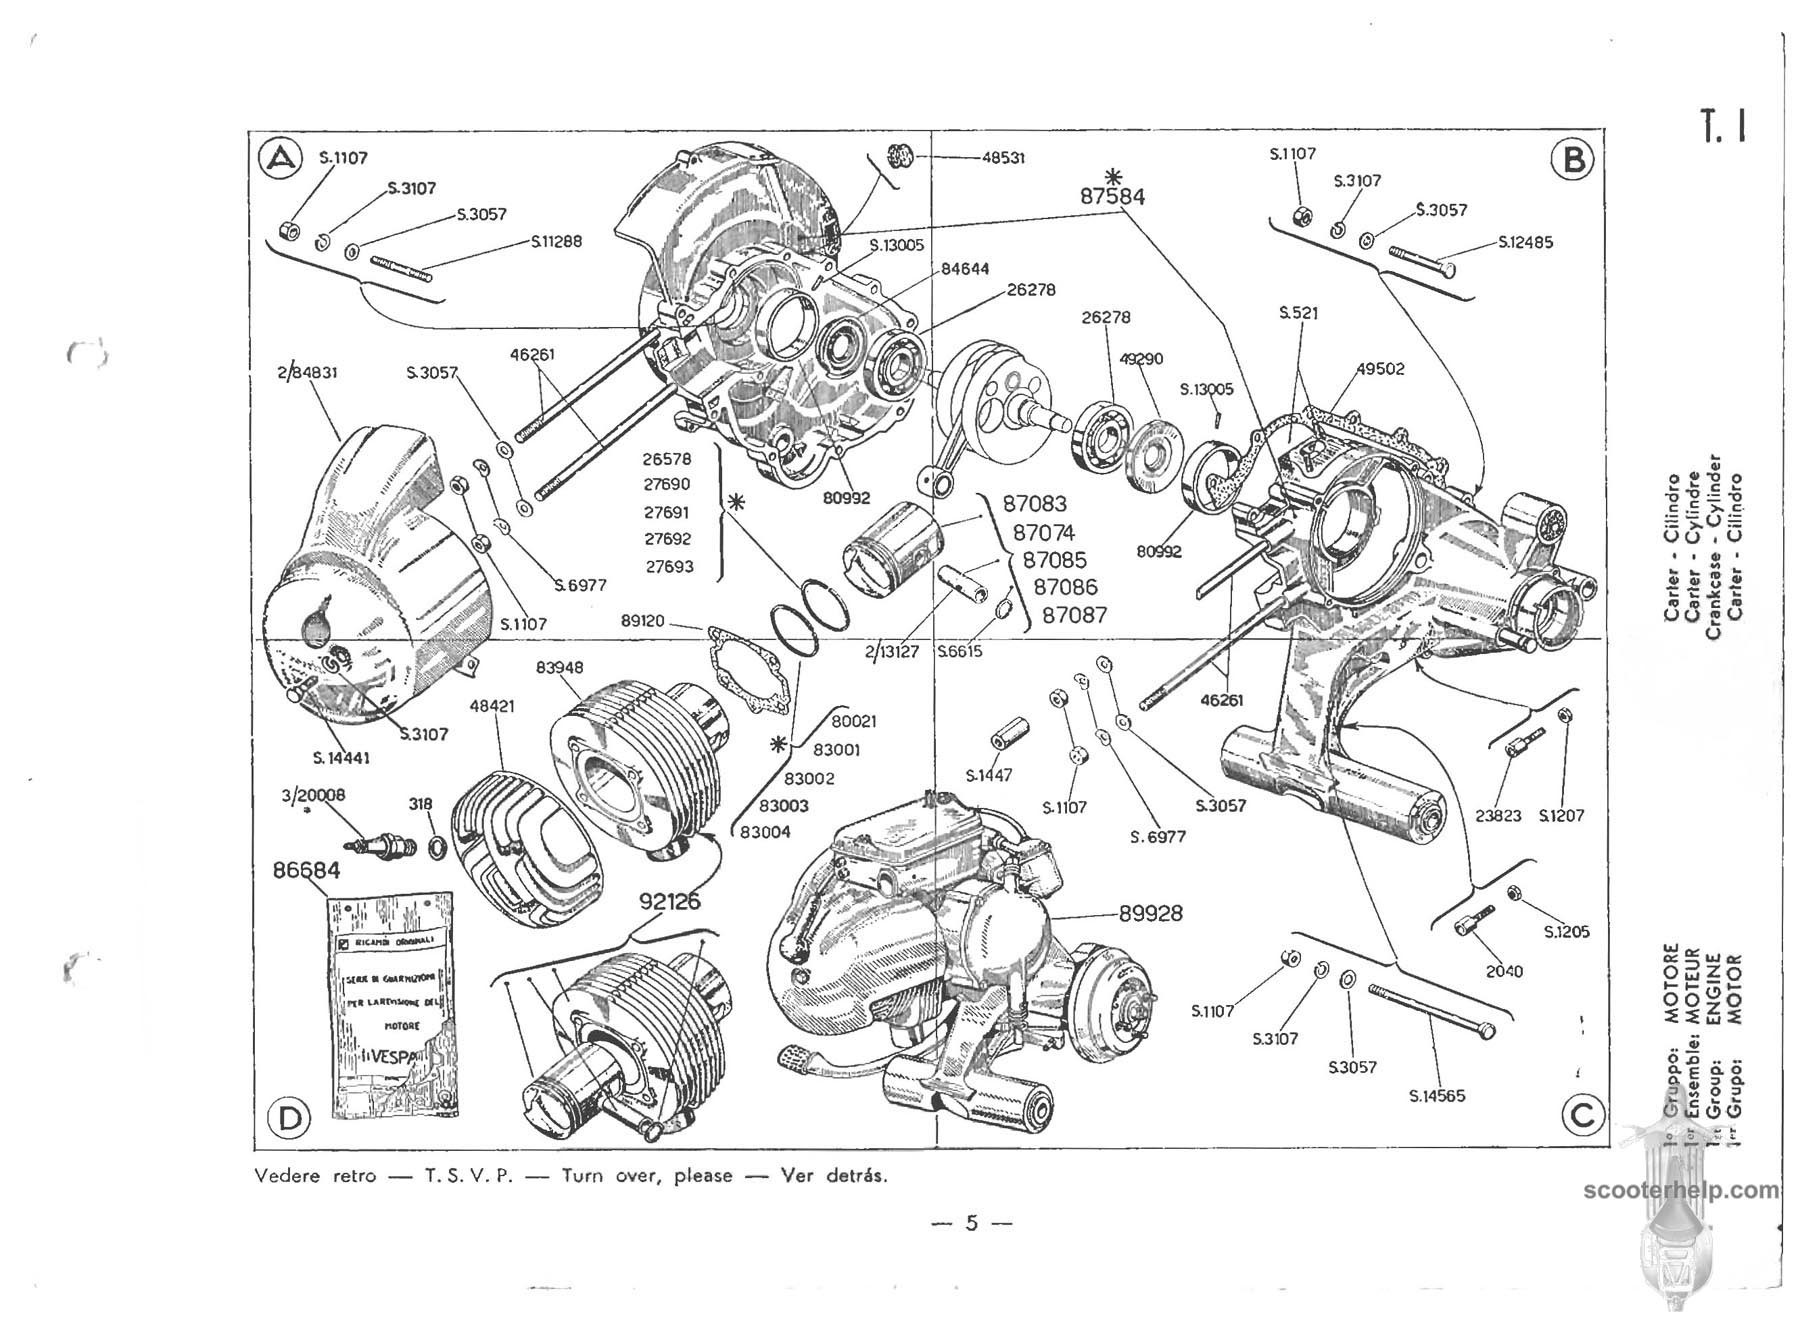 Vespa Engine Diagram Vespa 150 Vbb1t Parts Manual Of Vespa Engine Diagram